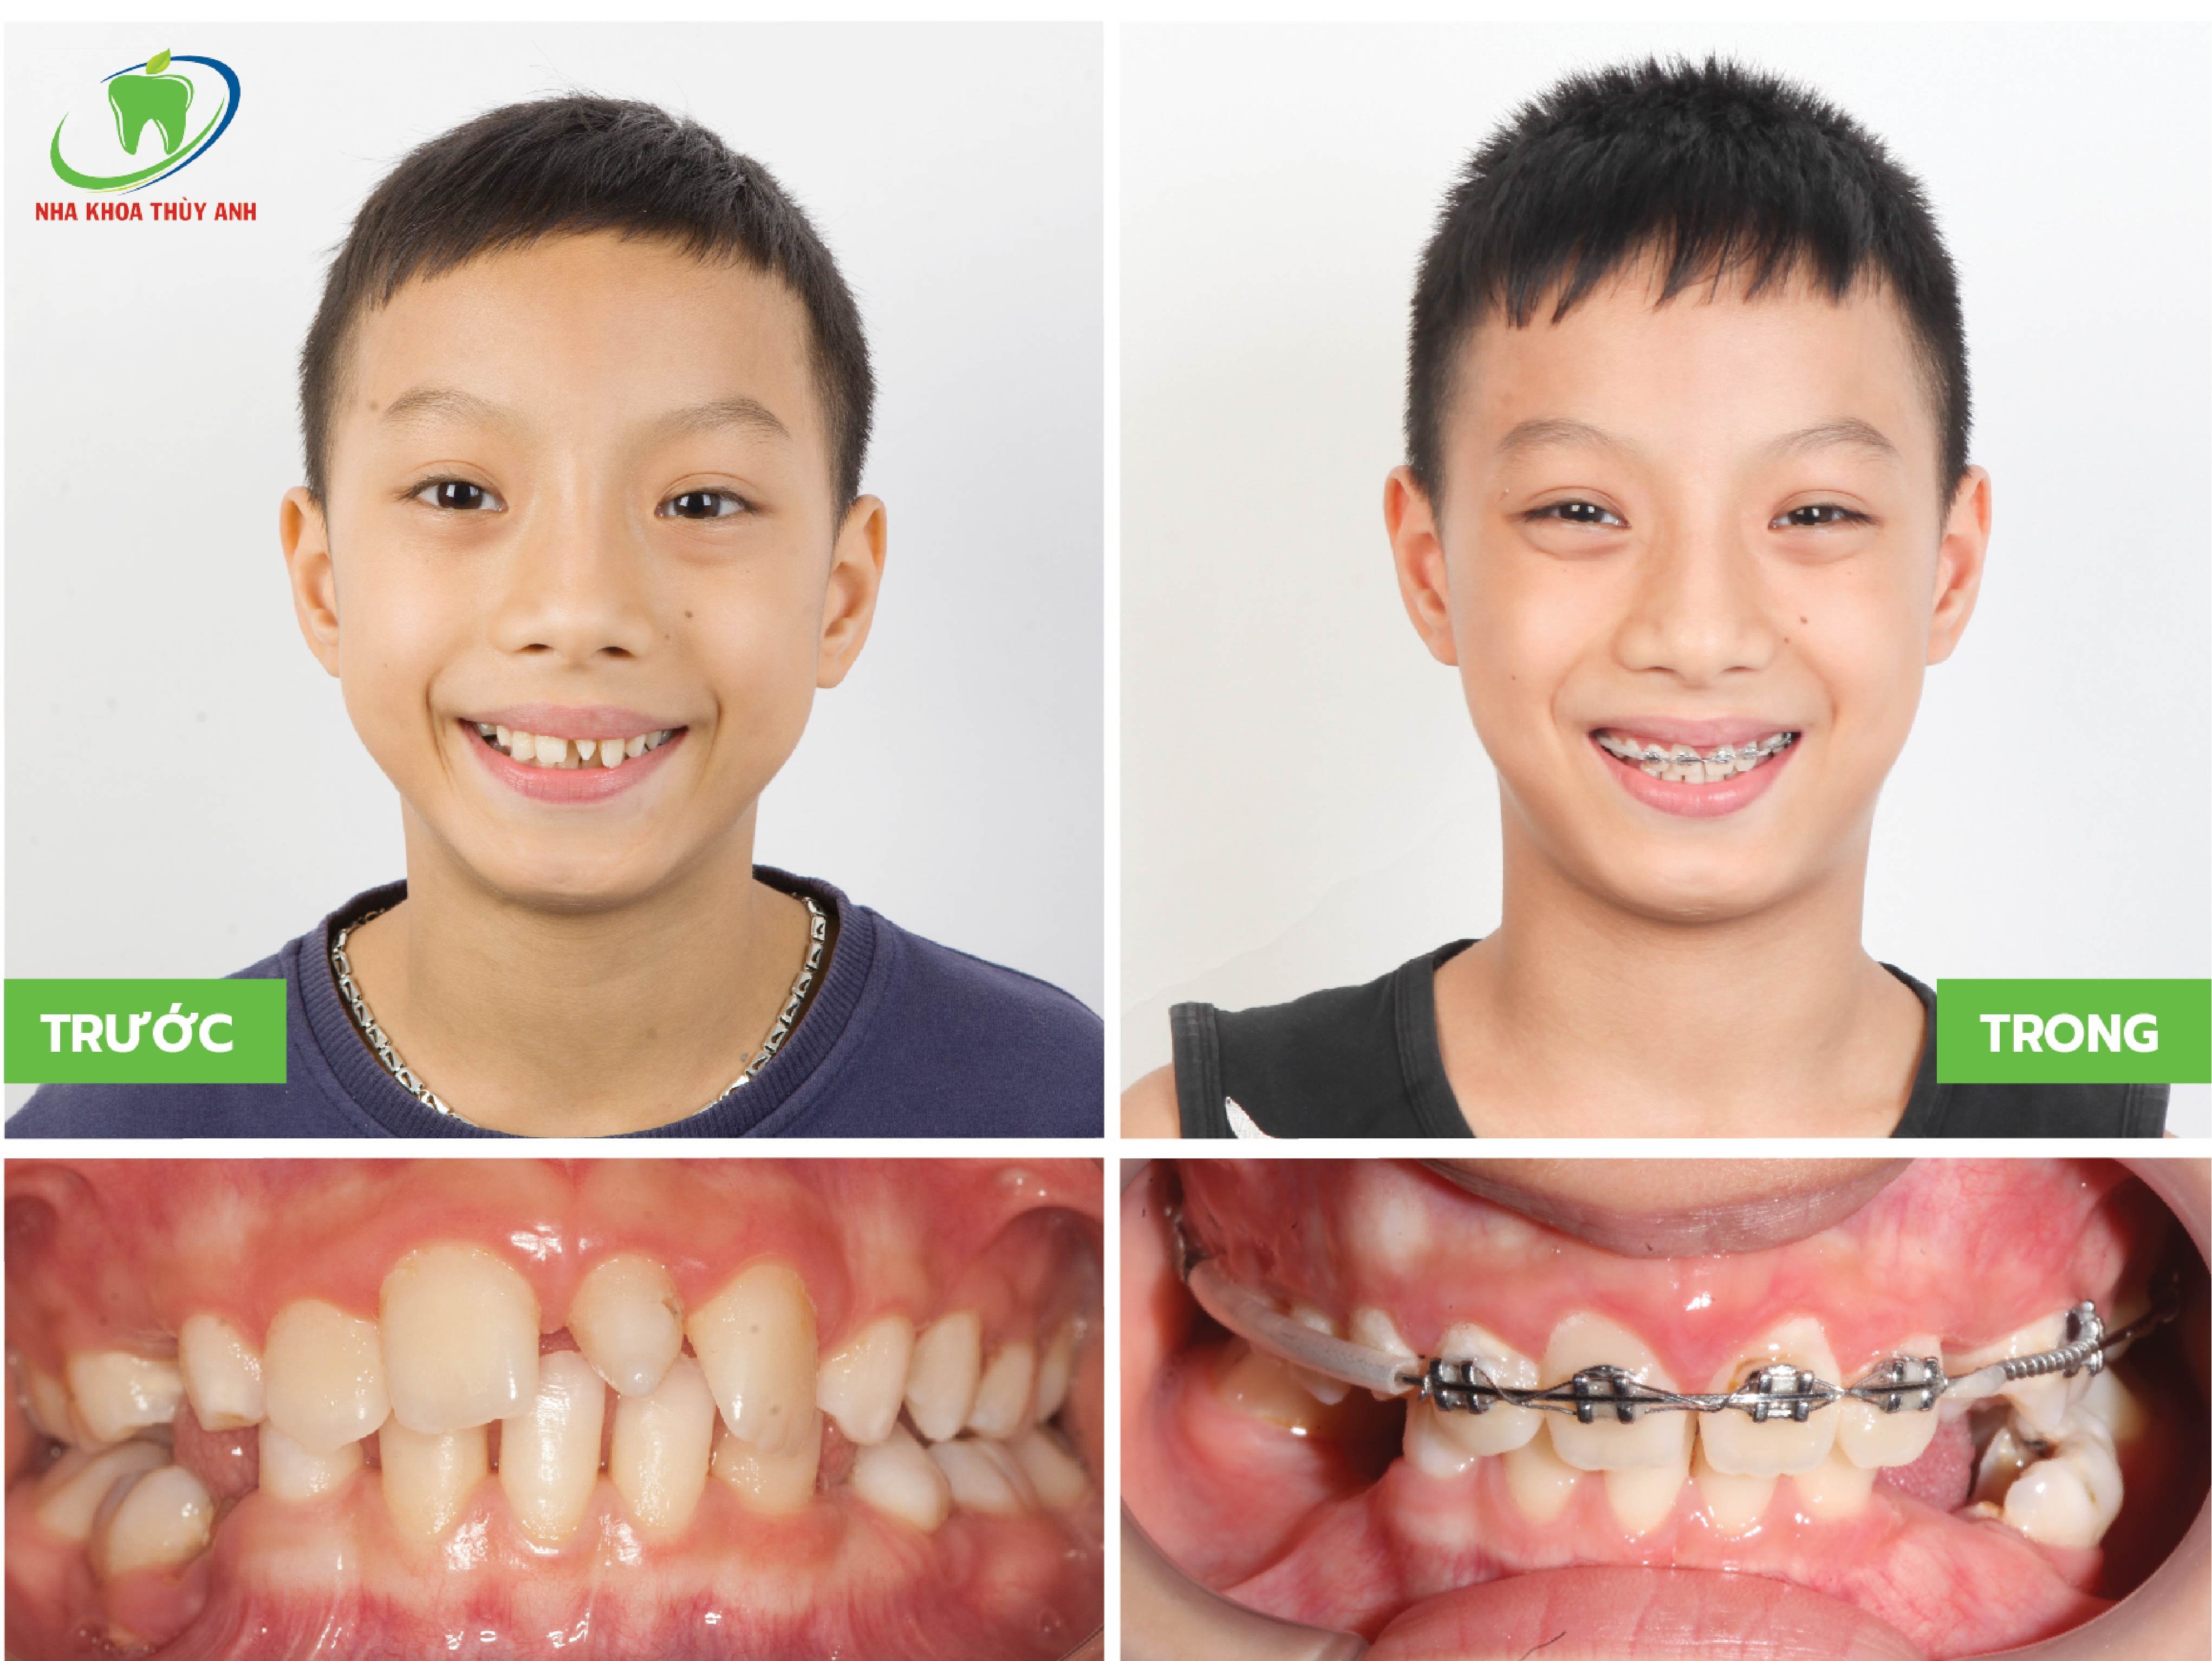 Niềng răng cho trẻ giá bao nhiêu? Niềng ở đâu Thái Nguyên thì tốt?